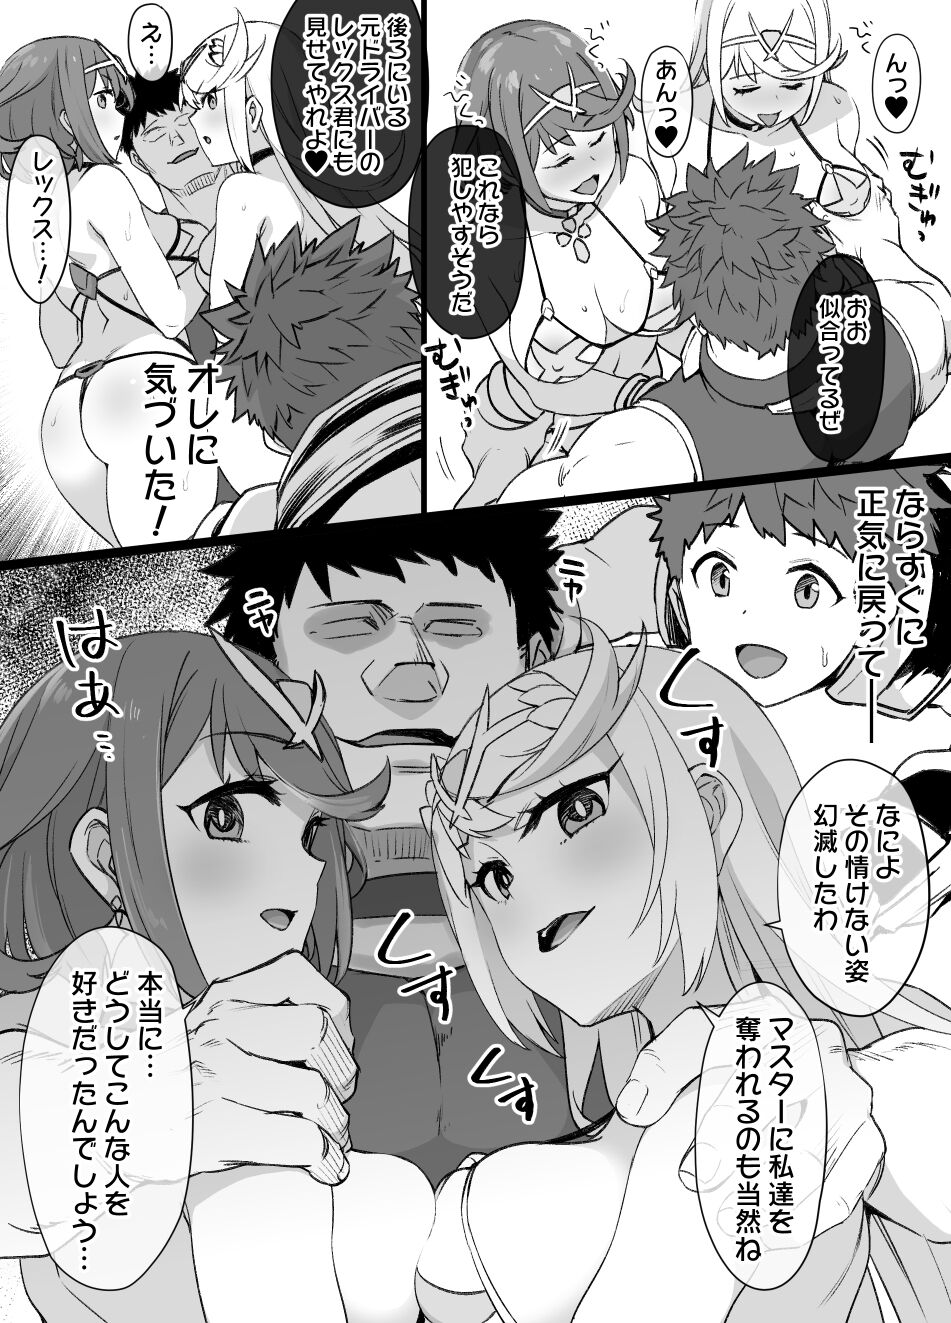 [草野郎] ホムラ＆ヒカリ洗脳NTR漫画 14P (ゼノブレイド2)